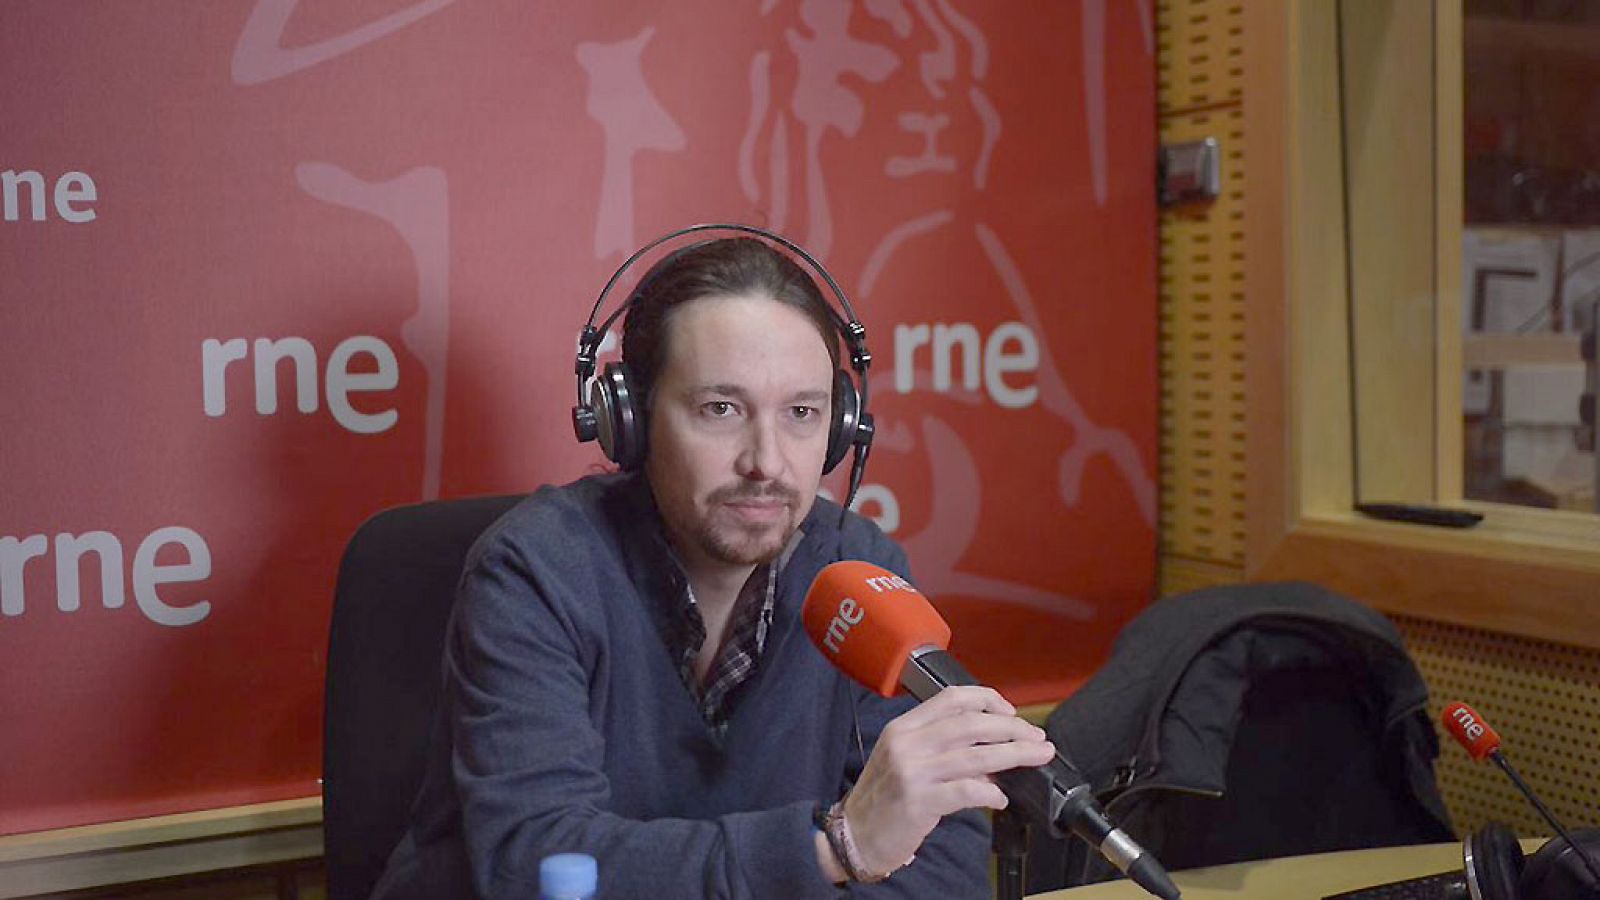  Las mañanas de RNE - Pablo Iglesias (Podemos) cree que es una "lástima" que Luis Alegre insulte a compañeros - Escuchar ahora 